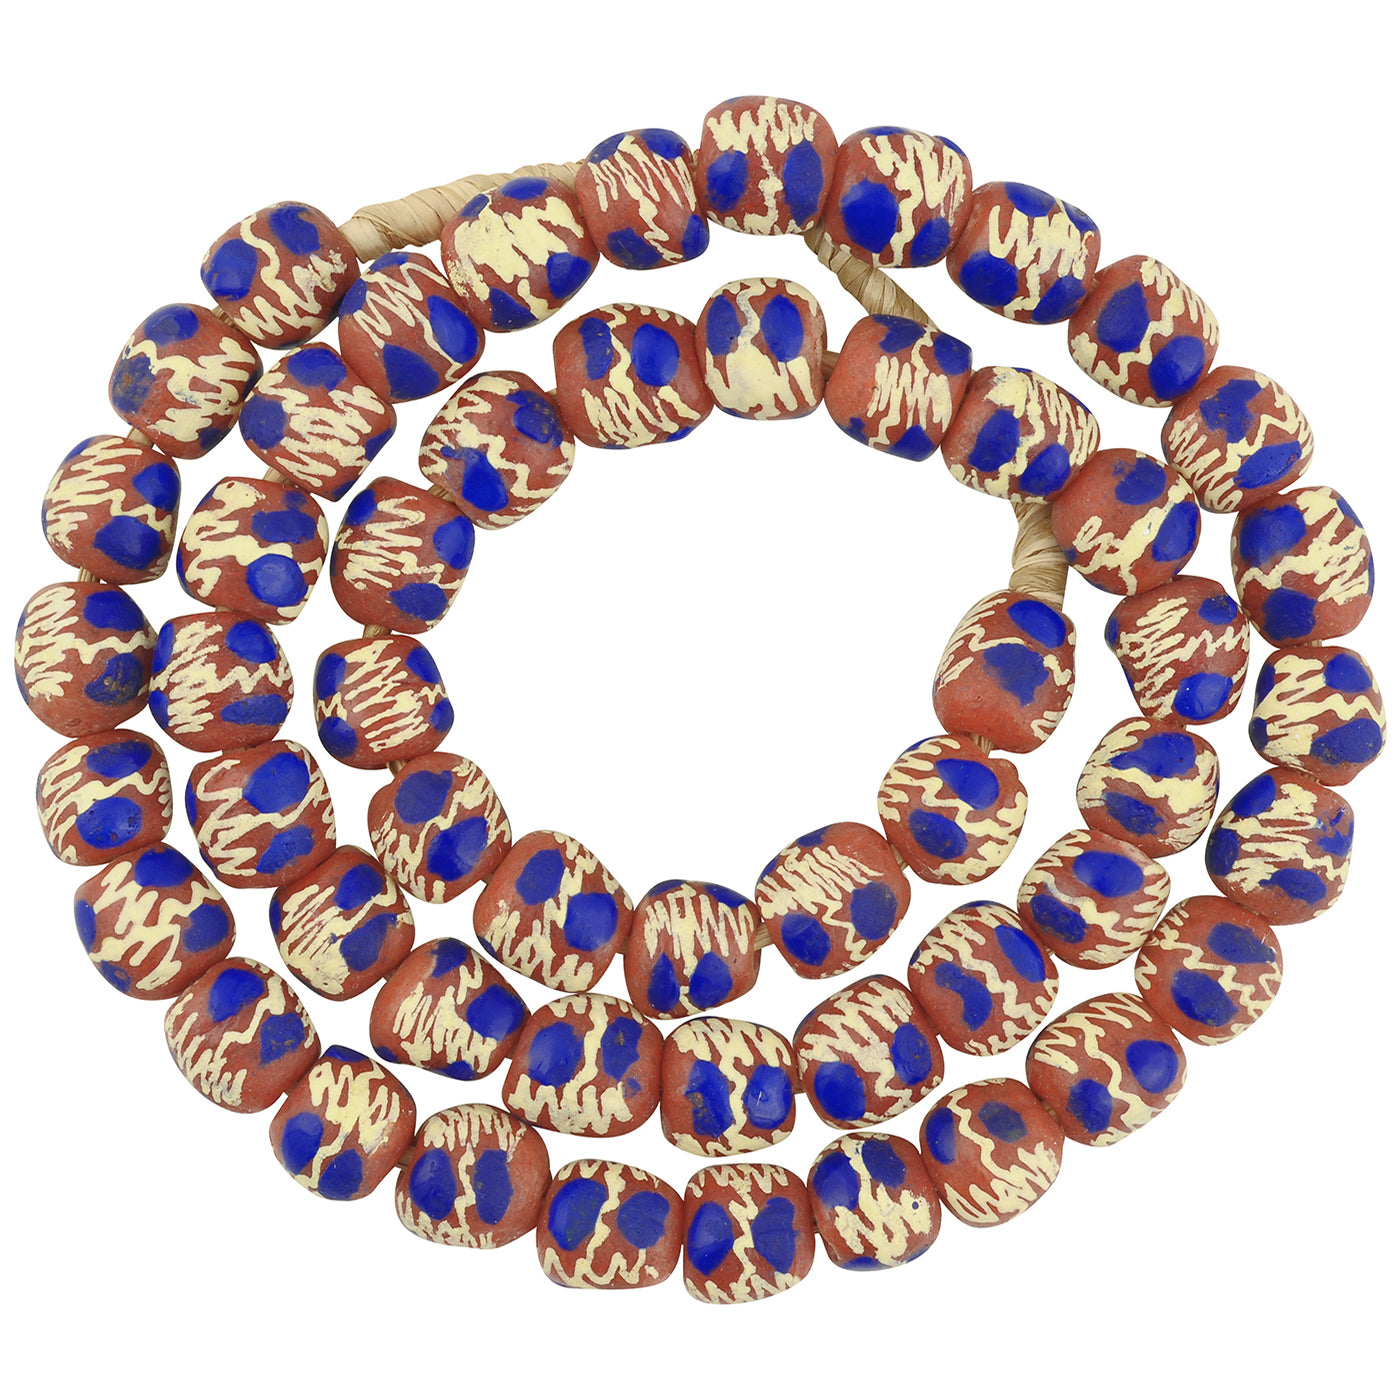 Handgefertigte Perlen aus recyceltem Glaspulver Krobo Afrikanische Halskette Ghana